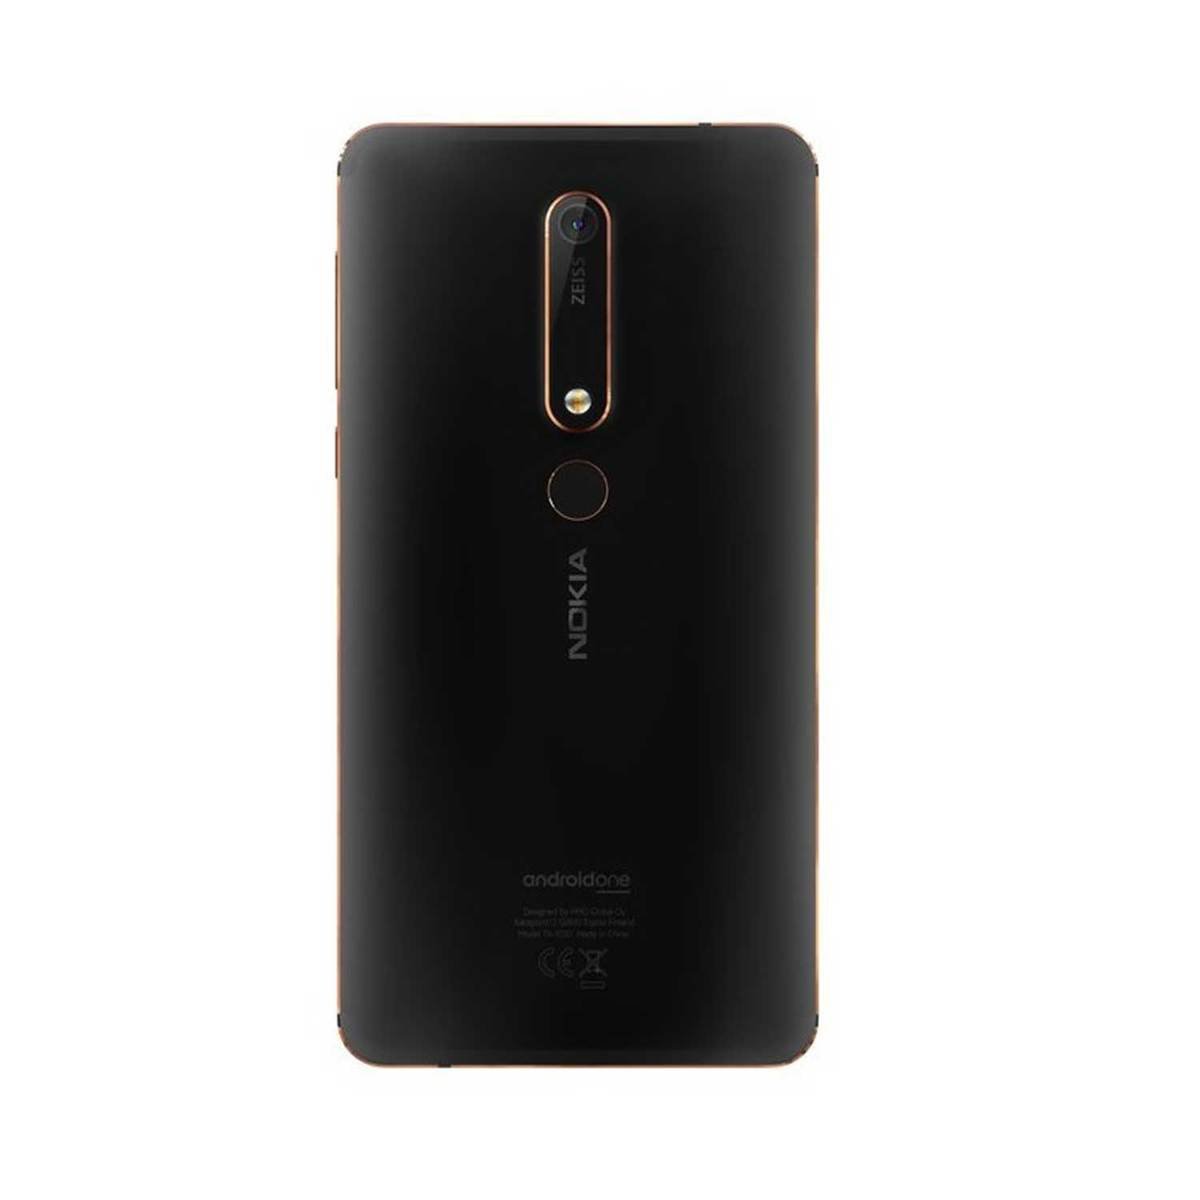 Nokia 6.1 32GB Black Copper